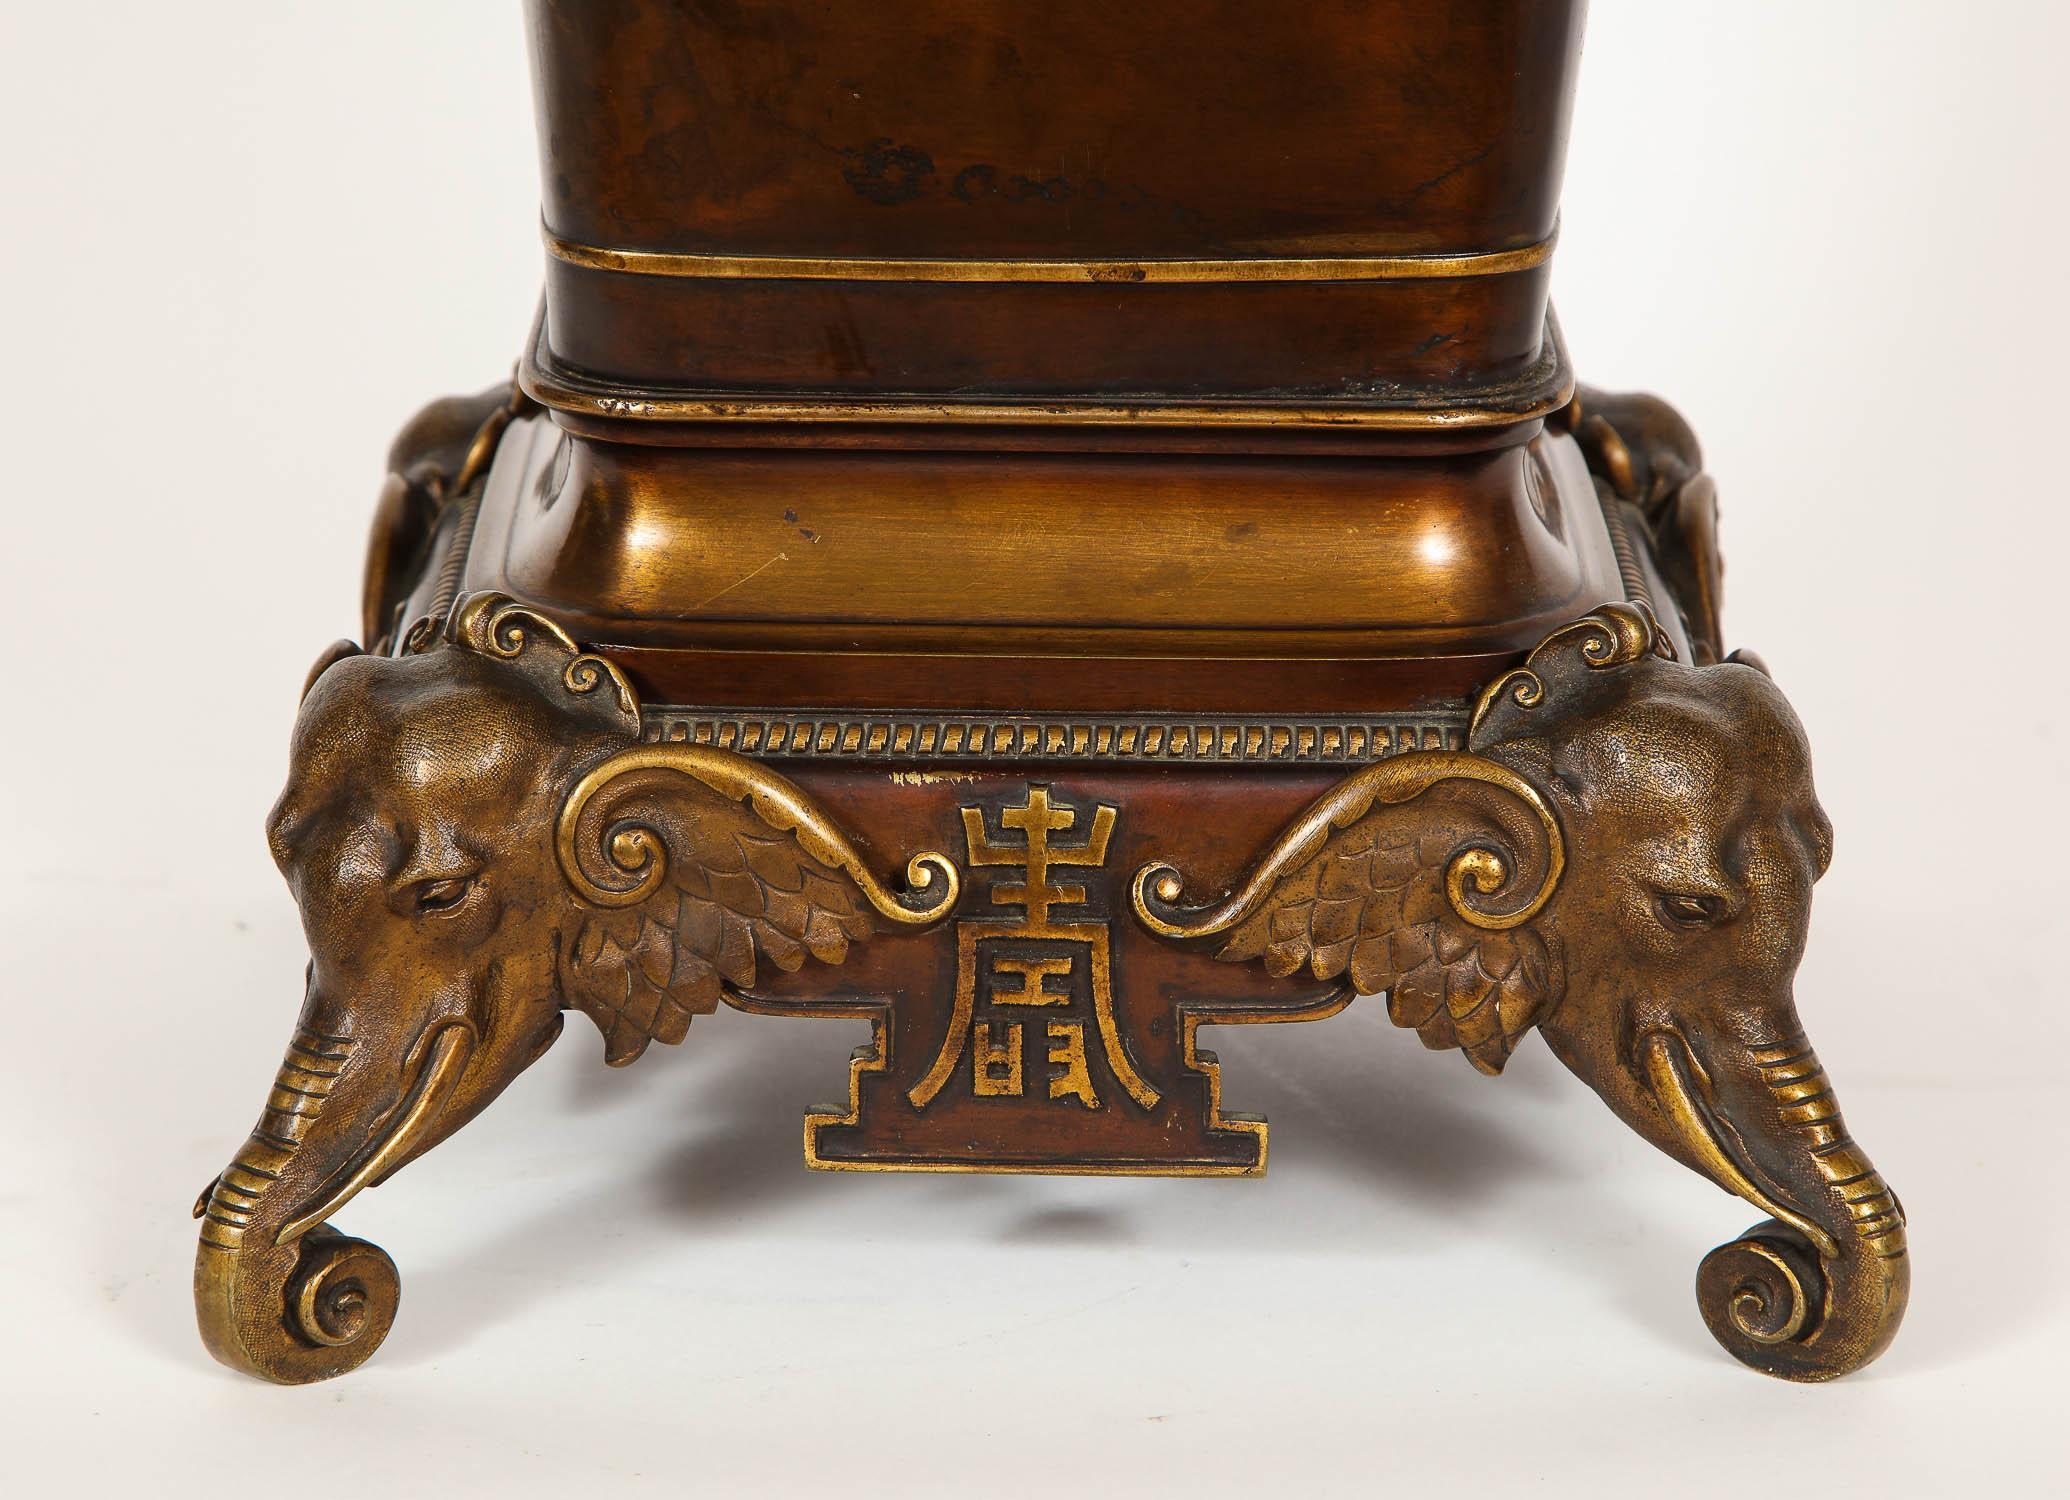 Diese einzigartige Vase im orientalischen Stil aus französischer Bronze von Edouard Lievre, die für den chinesischen Markt bestimmt war, wurde in außergewöhnlicher Handarbeit hergestellt und mit goldenen Highlights patiniert. Auf der Vase sind